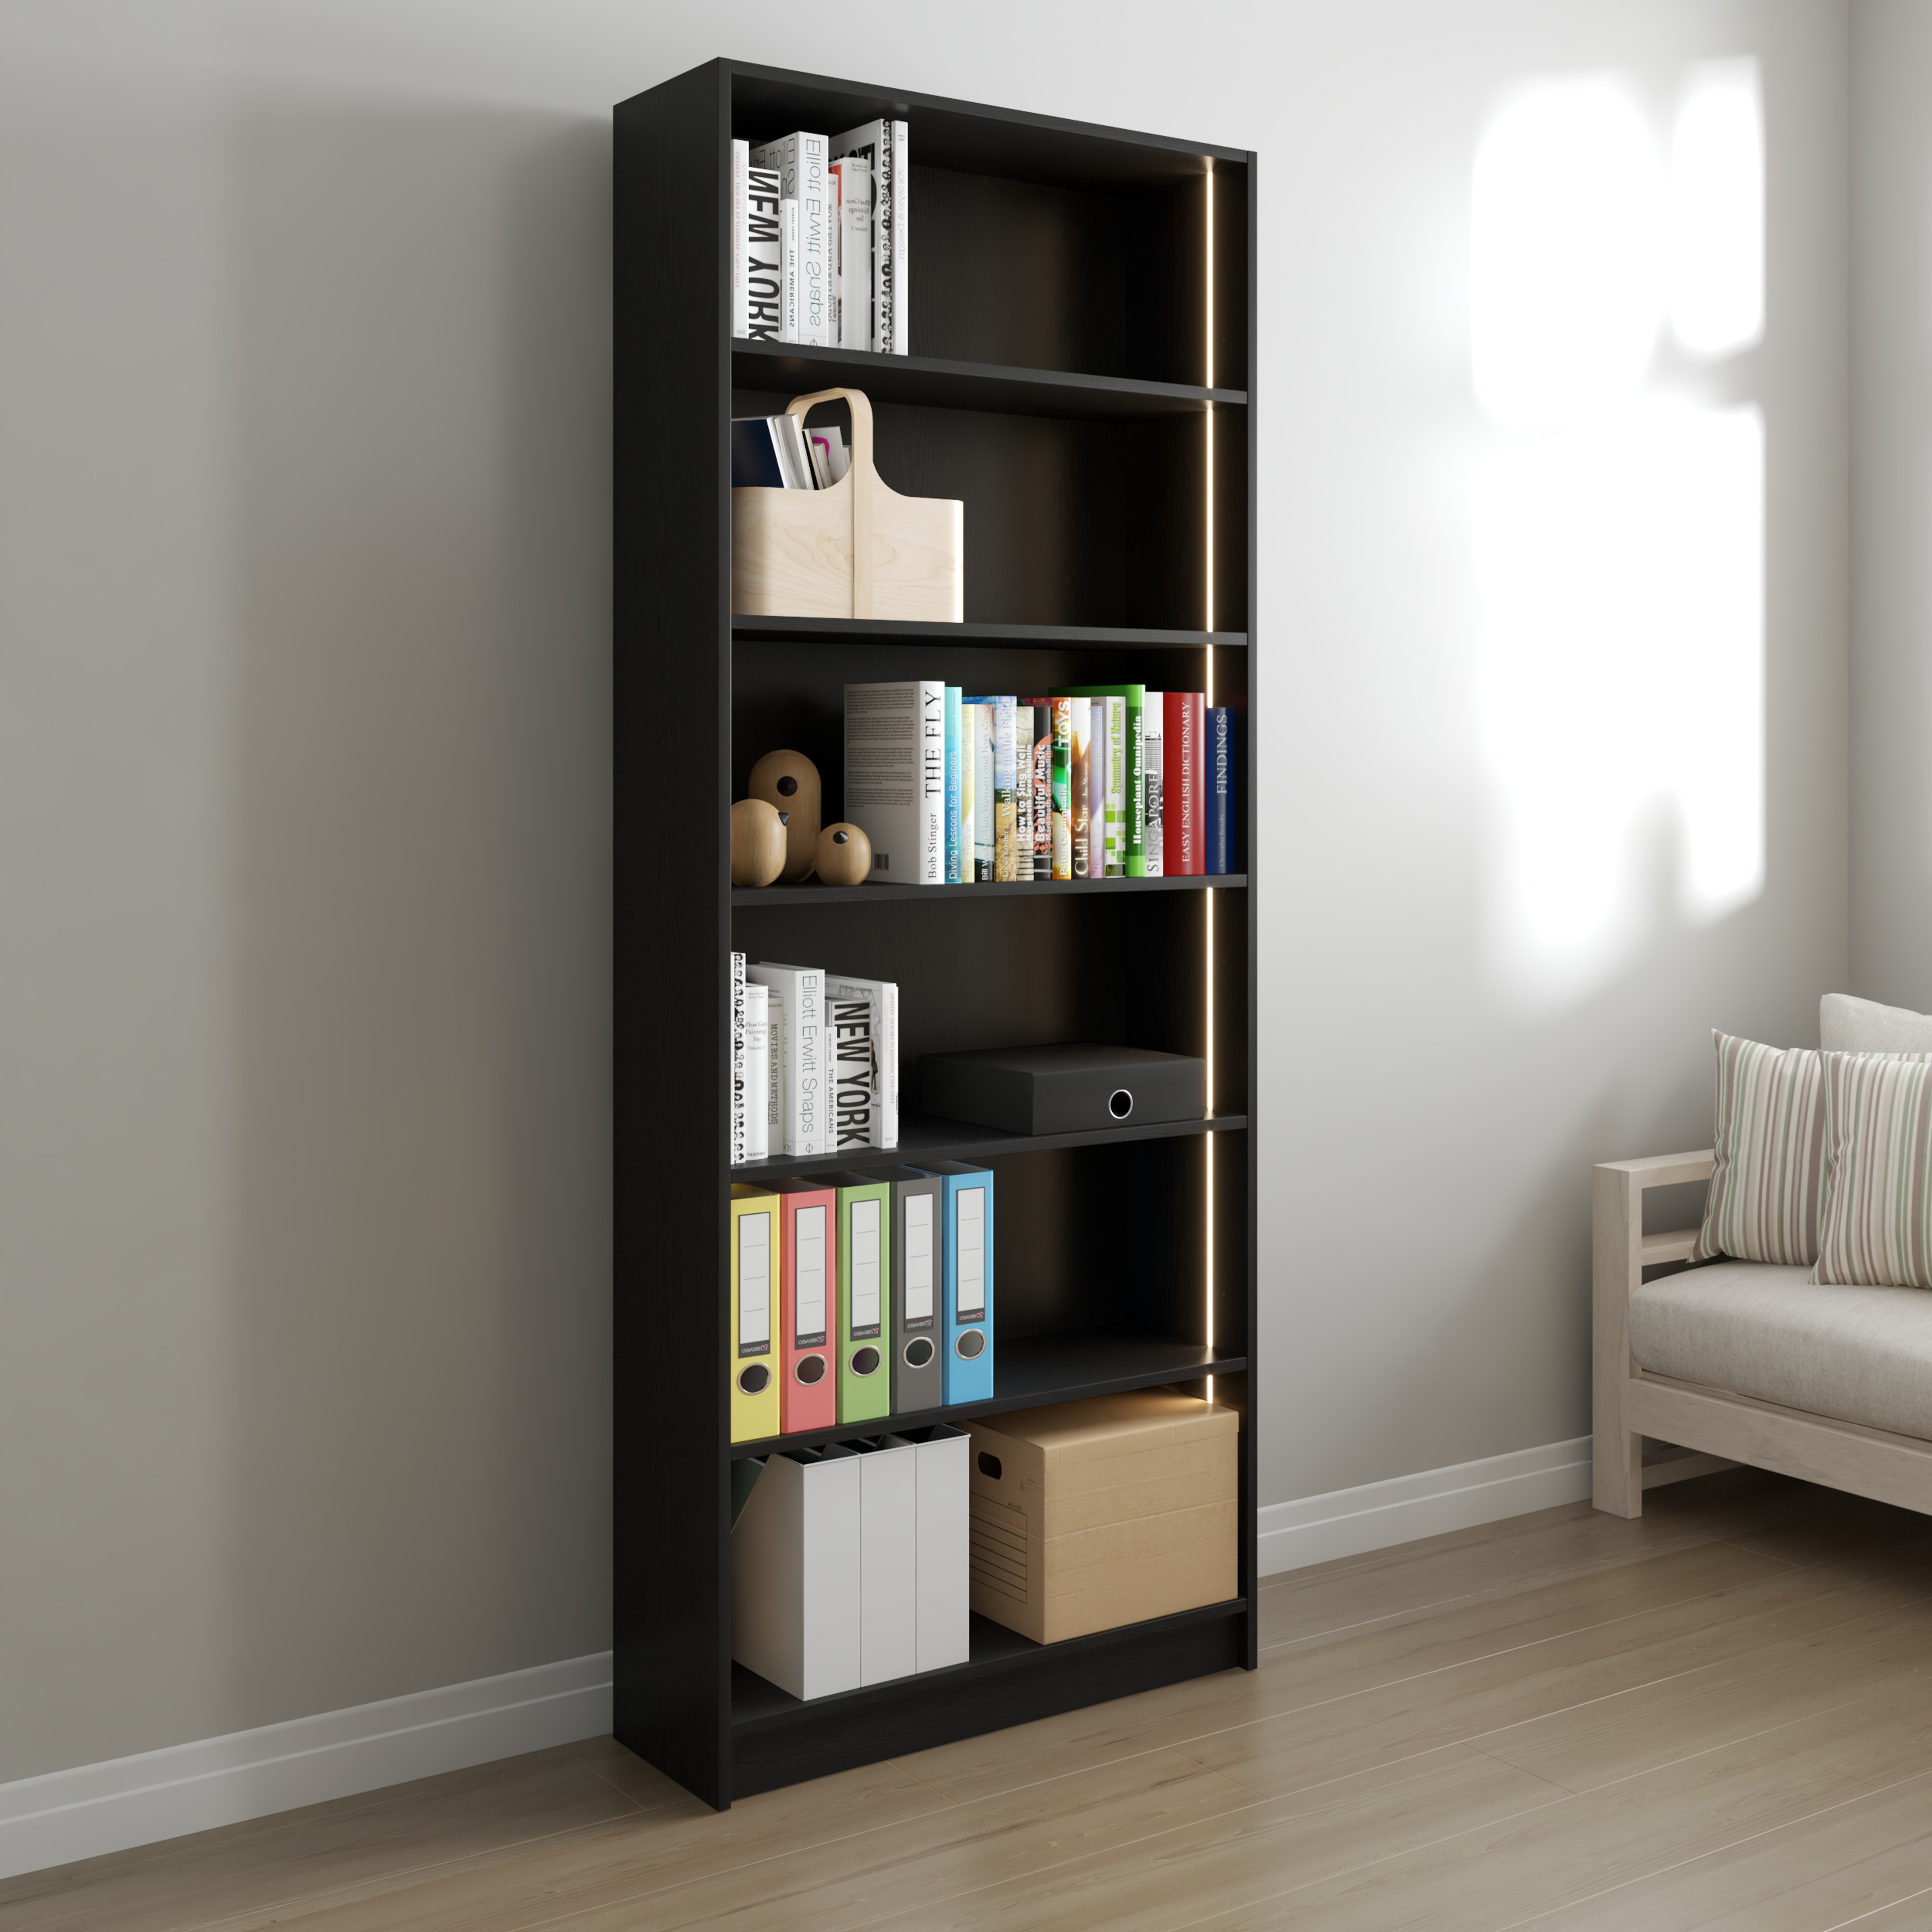 [Happy Home Furniture] CATY, kệ sách 6 tầng tích hợp đèn LED, 80cm x 28cm x 202cm (DxRxC), KSA_006_LED